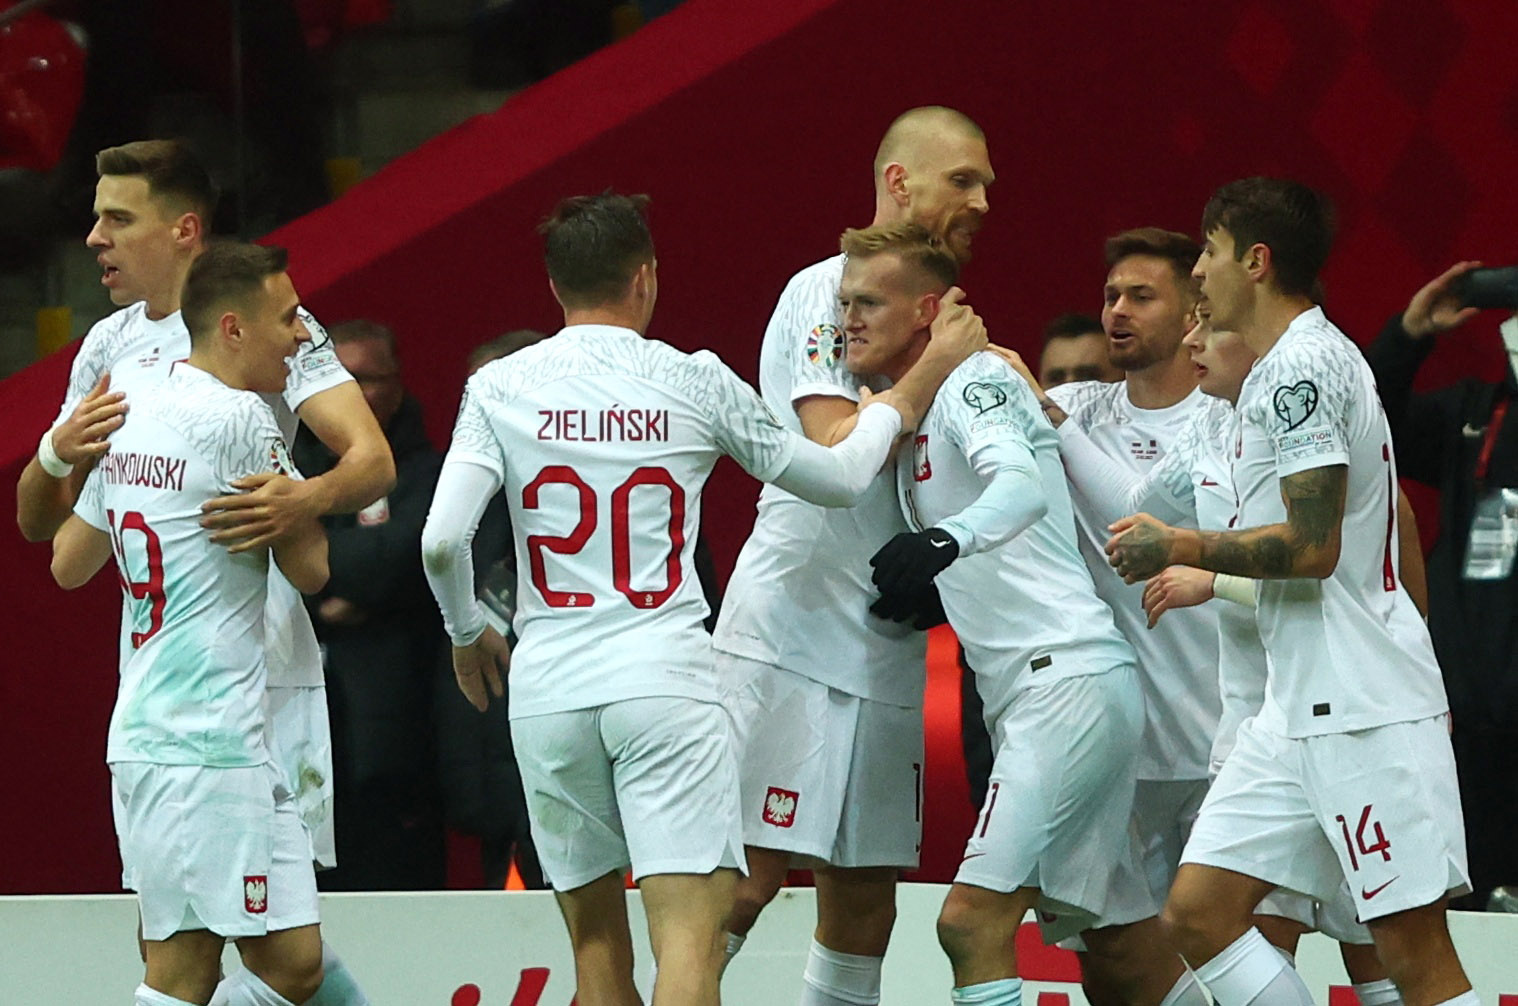 Προκριματικά Euro 2024: Ο Κάρολ Σβιντέρσκι χάρισε την πρώτη νίκη στην Πολωνία του Φερνάντο Σάντος – Όλα τα αποτελέσματα